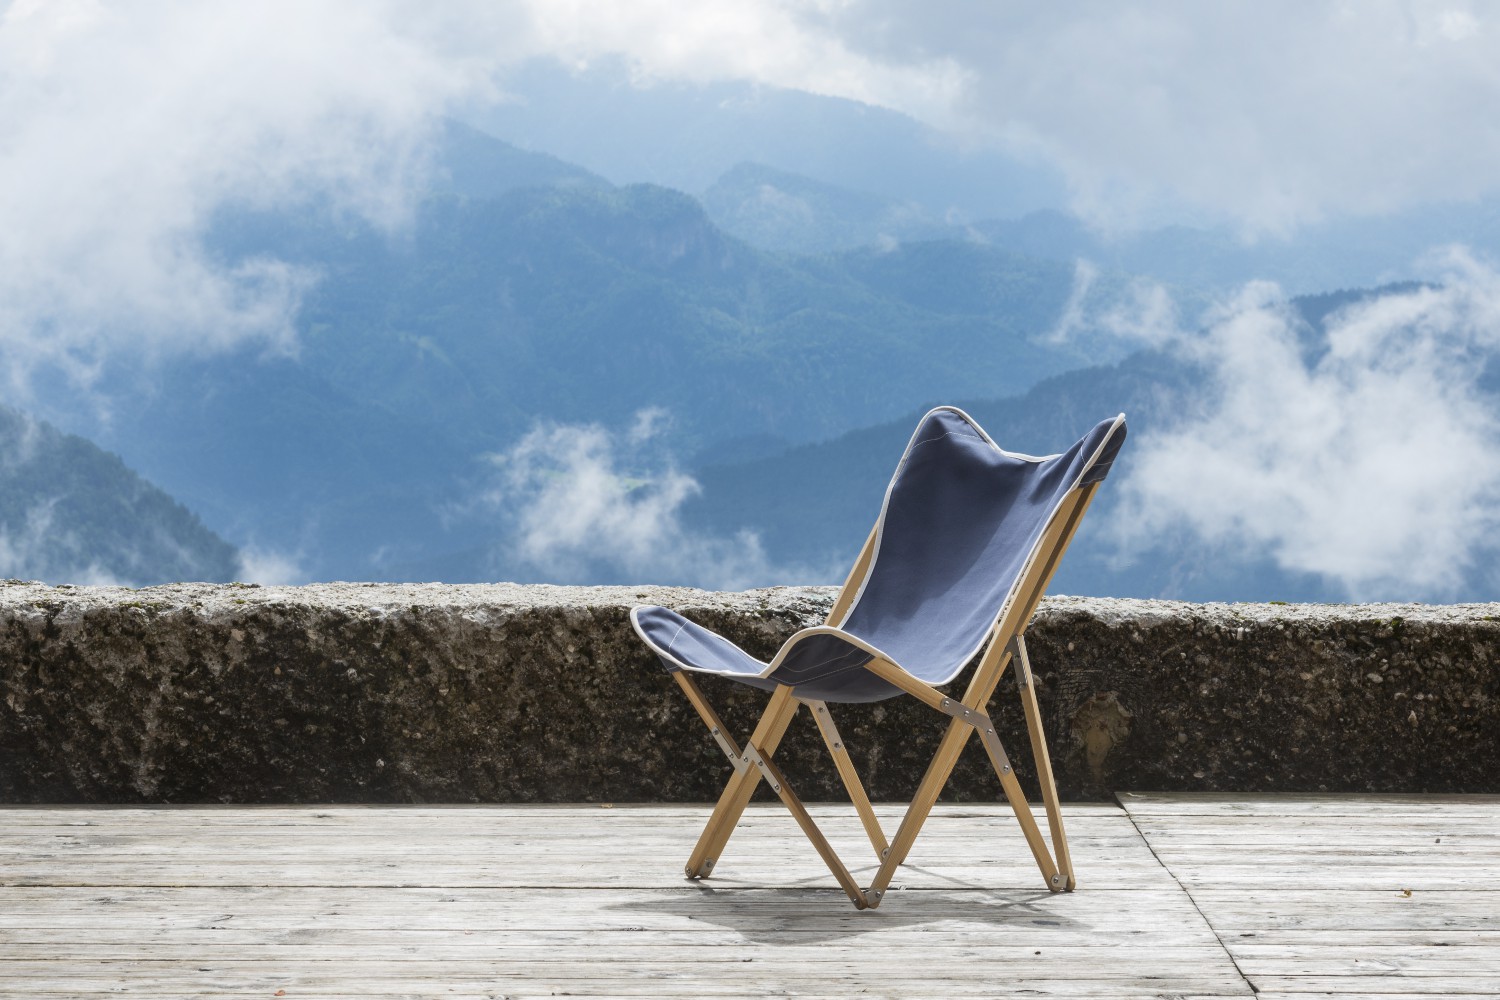 Kampierstuhl Esche mit Sitzfläche Segeltuch blau - auf Bergterrasse in Wolken